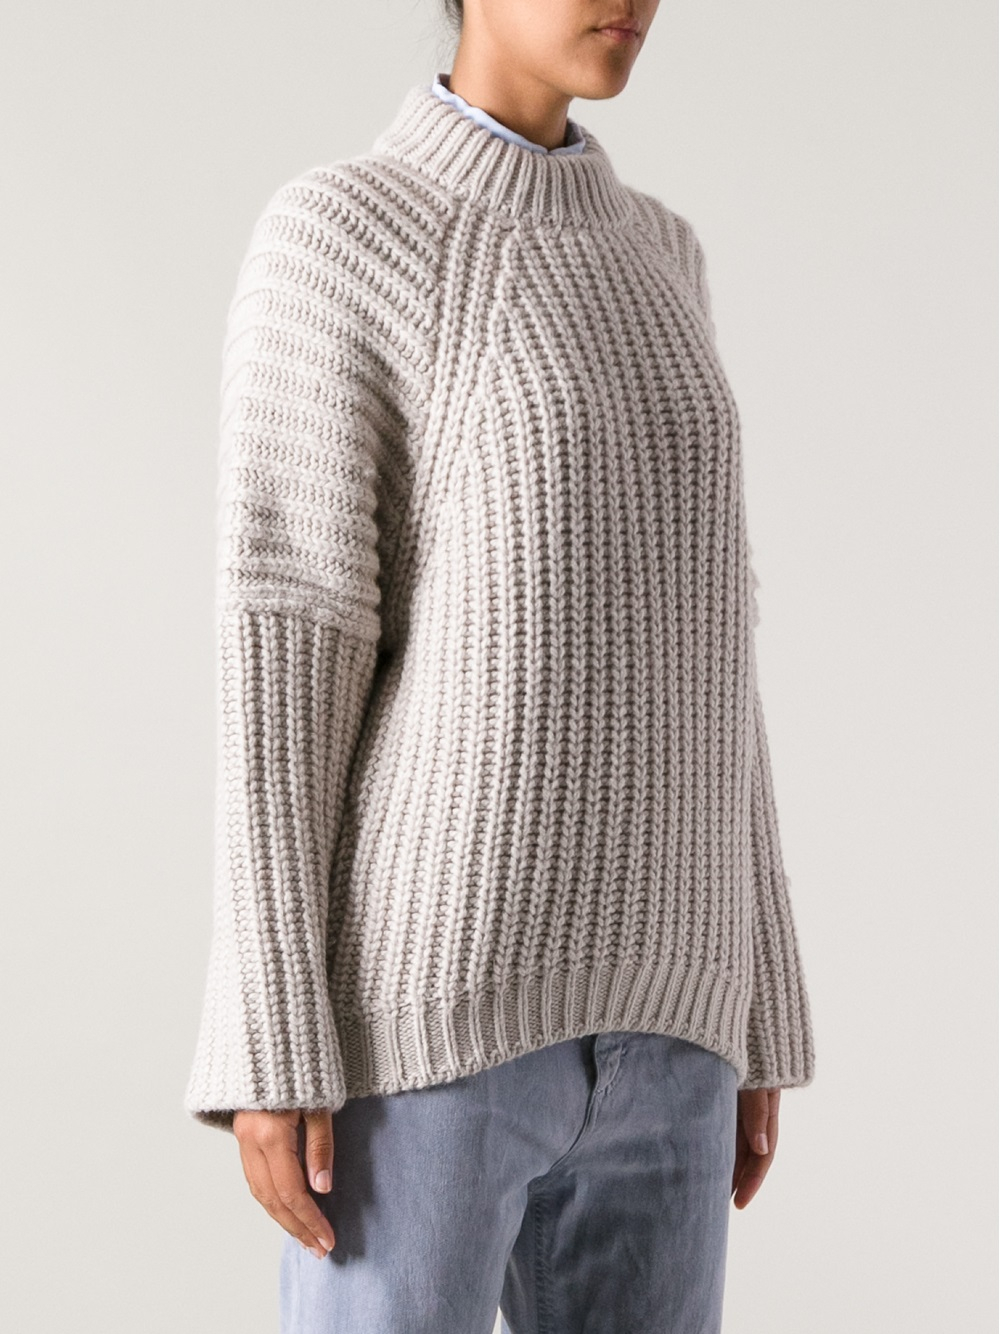 balenciaga sweater 2016